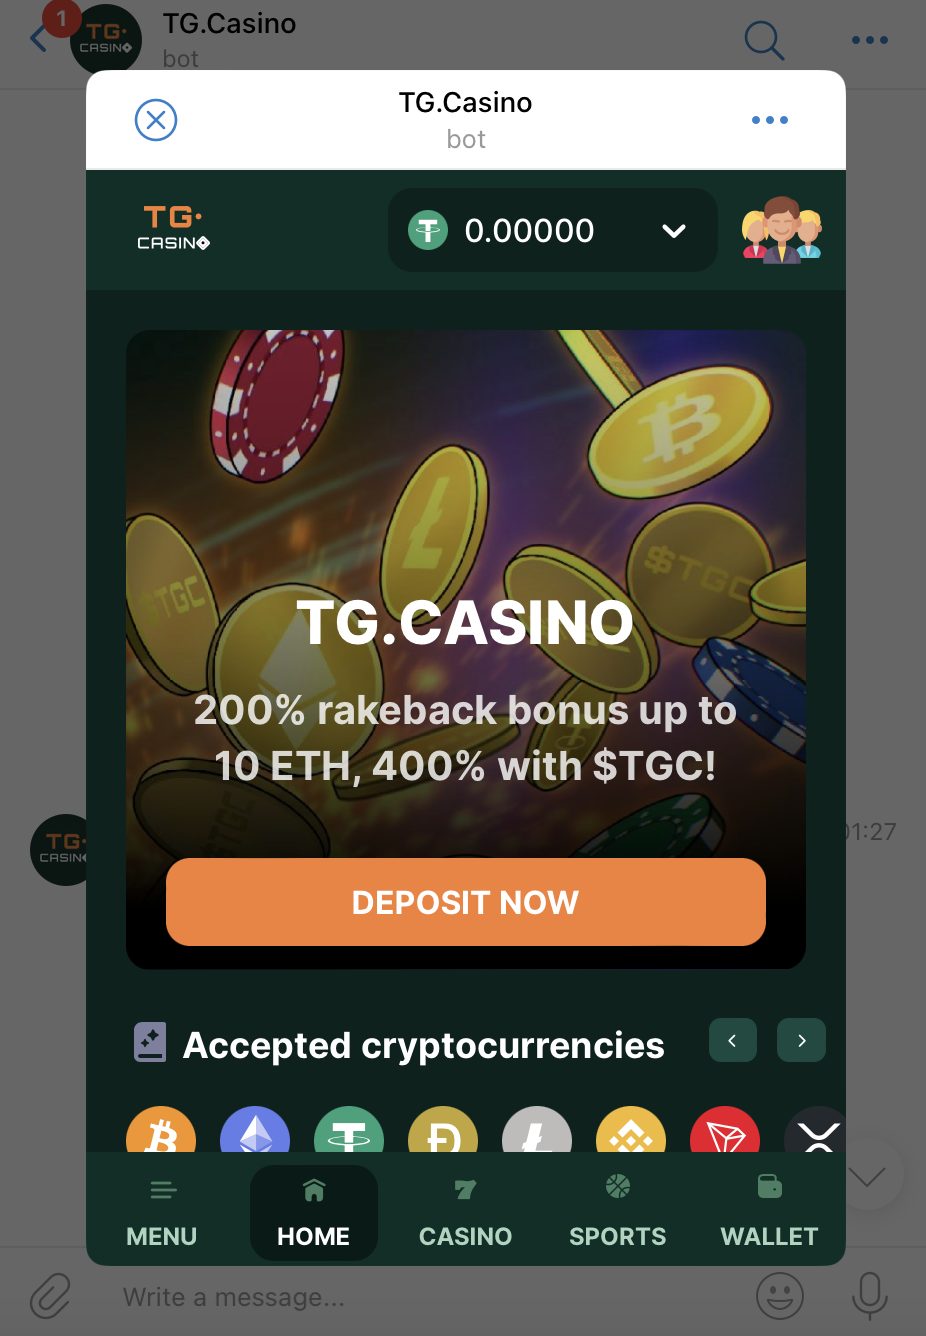 TG.Casino Telegram casino